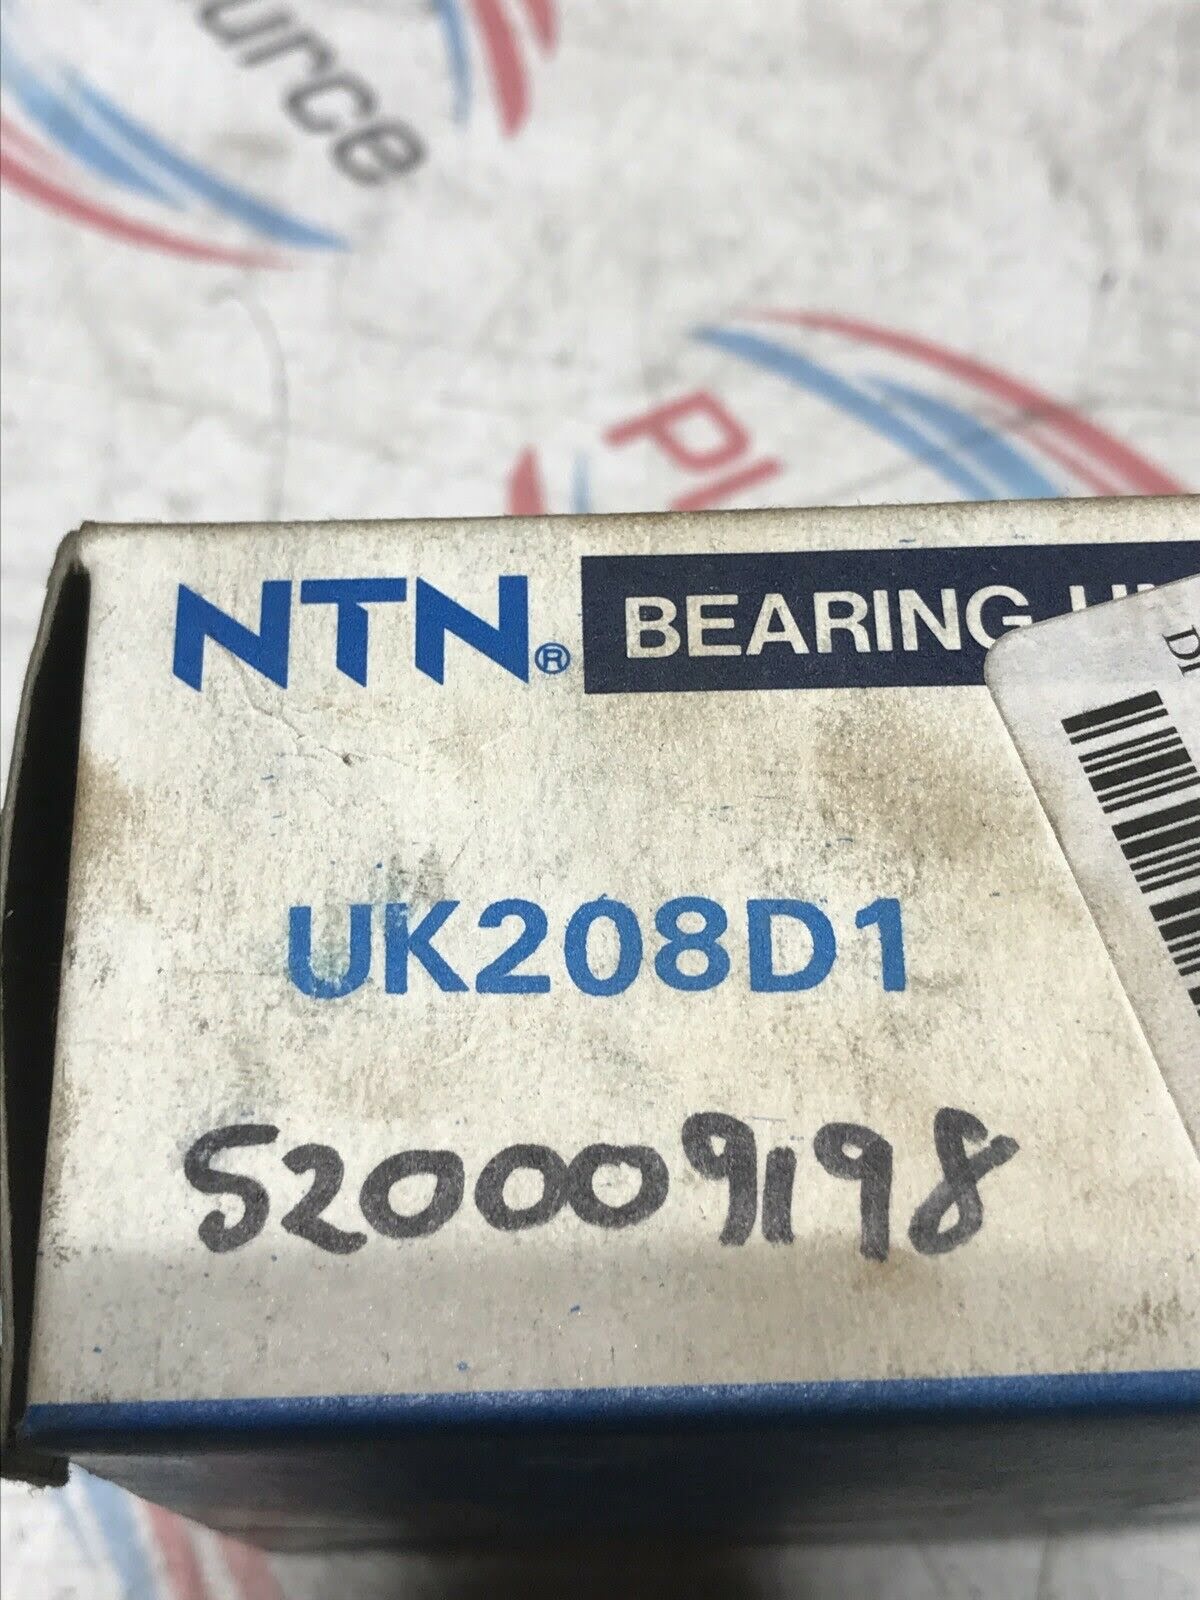 NTN BEARING UNIT UK208D1 INSERT BEARING